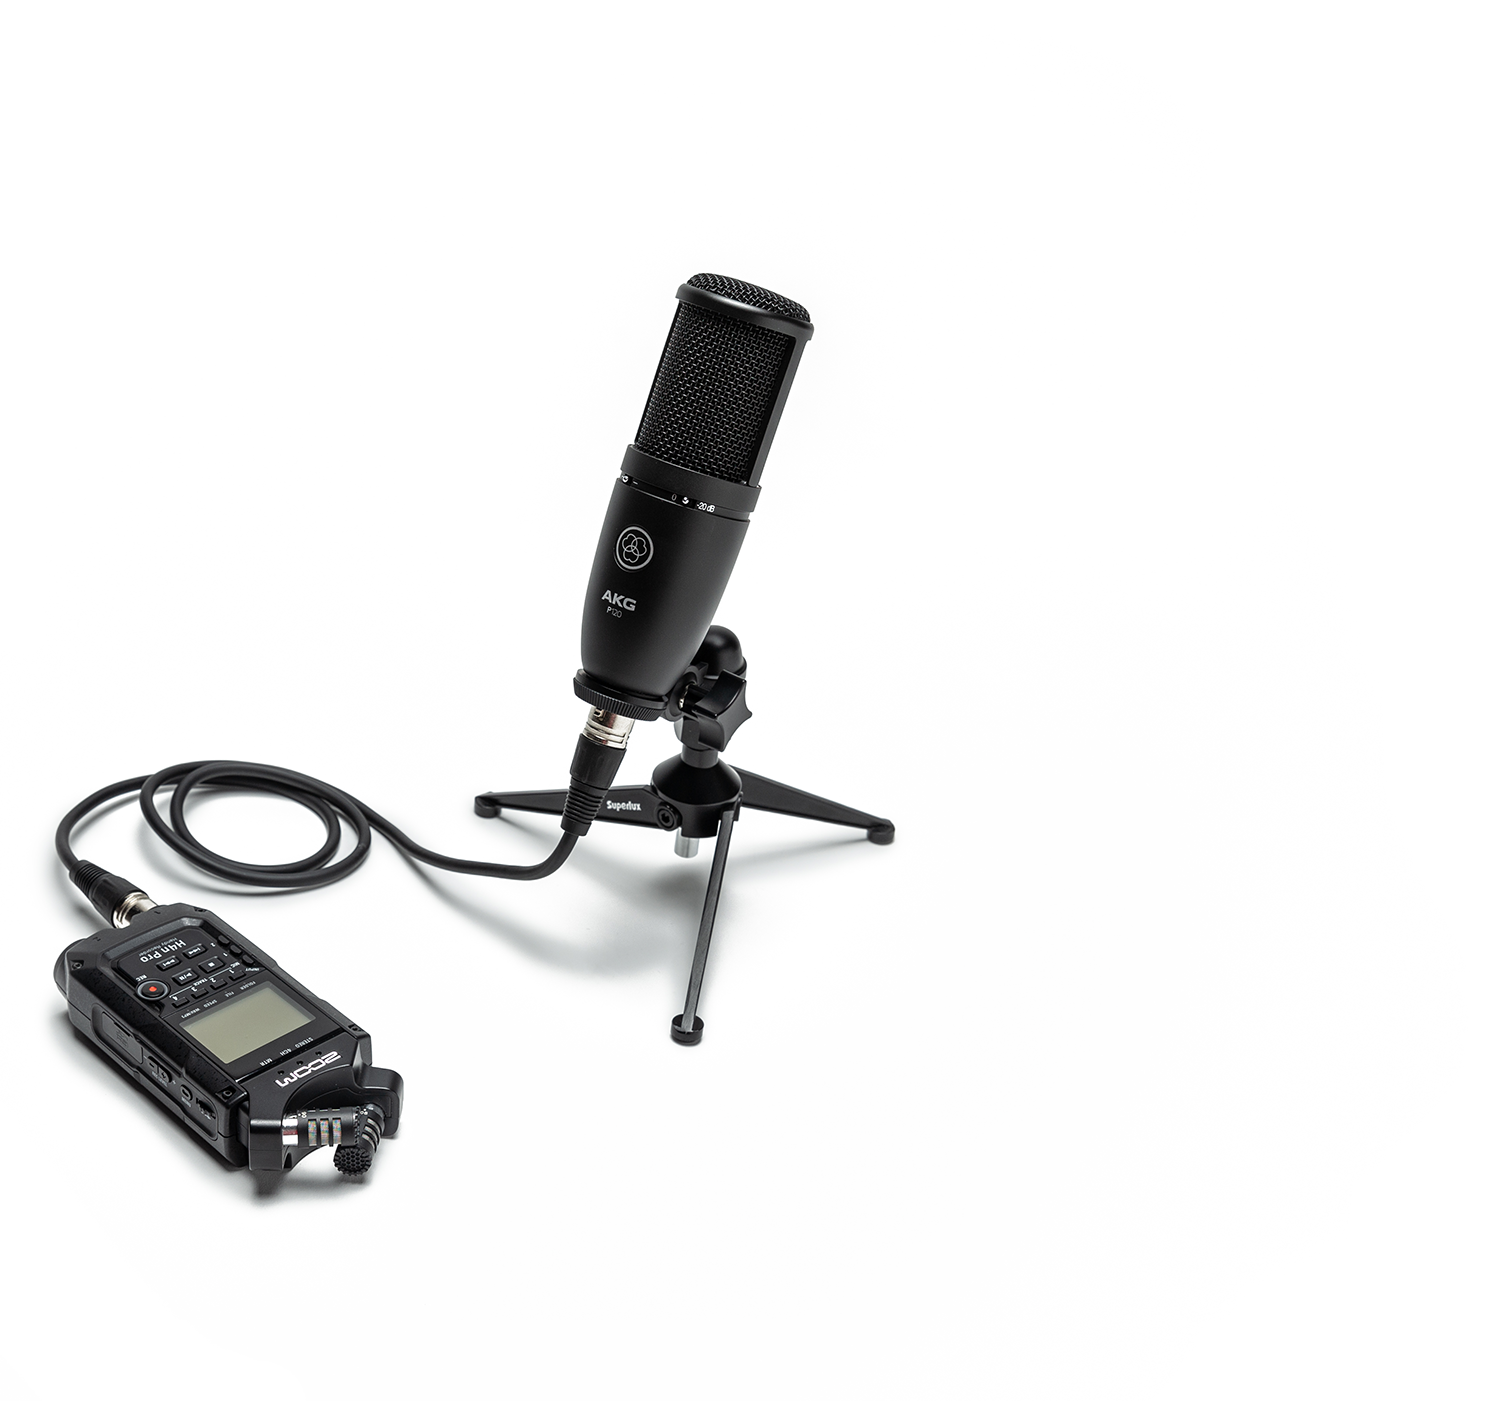 Kit Podcast Mic | Oferecemos um total de 7 kits para gravacões remotas de podcasts e vídeocasts. As maletas podem ser enviadas com facilidade até os participantes.  4 kits são voltados para gravação de áudio e vídeo, e 3 kits somente para áudio. Além do nosso treinamento personalizado através de vídeochamada, os kits acompanham um manual impresso e também disponibilizamos uma vídeoaula rápida e prática ensiando a operação. O AKG Perception 120 é um microfone condensador de construção sólida, o que garante um melhor desempenho e durabilidade. Possui um diafragma de alta qualidade proporcionando um som mais claro e preciso, além de duas chaves seletoras: com pre atenuação de 20dB e um filtro de baixas frequências. O Perception 120 é uma excelente opção para gravações em estudio e ao vivo. 